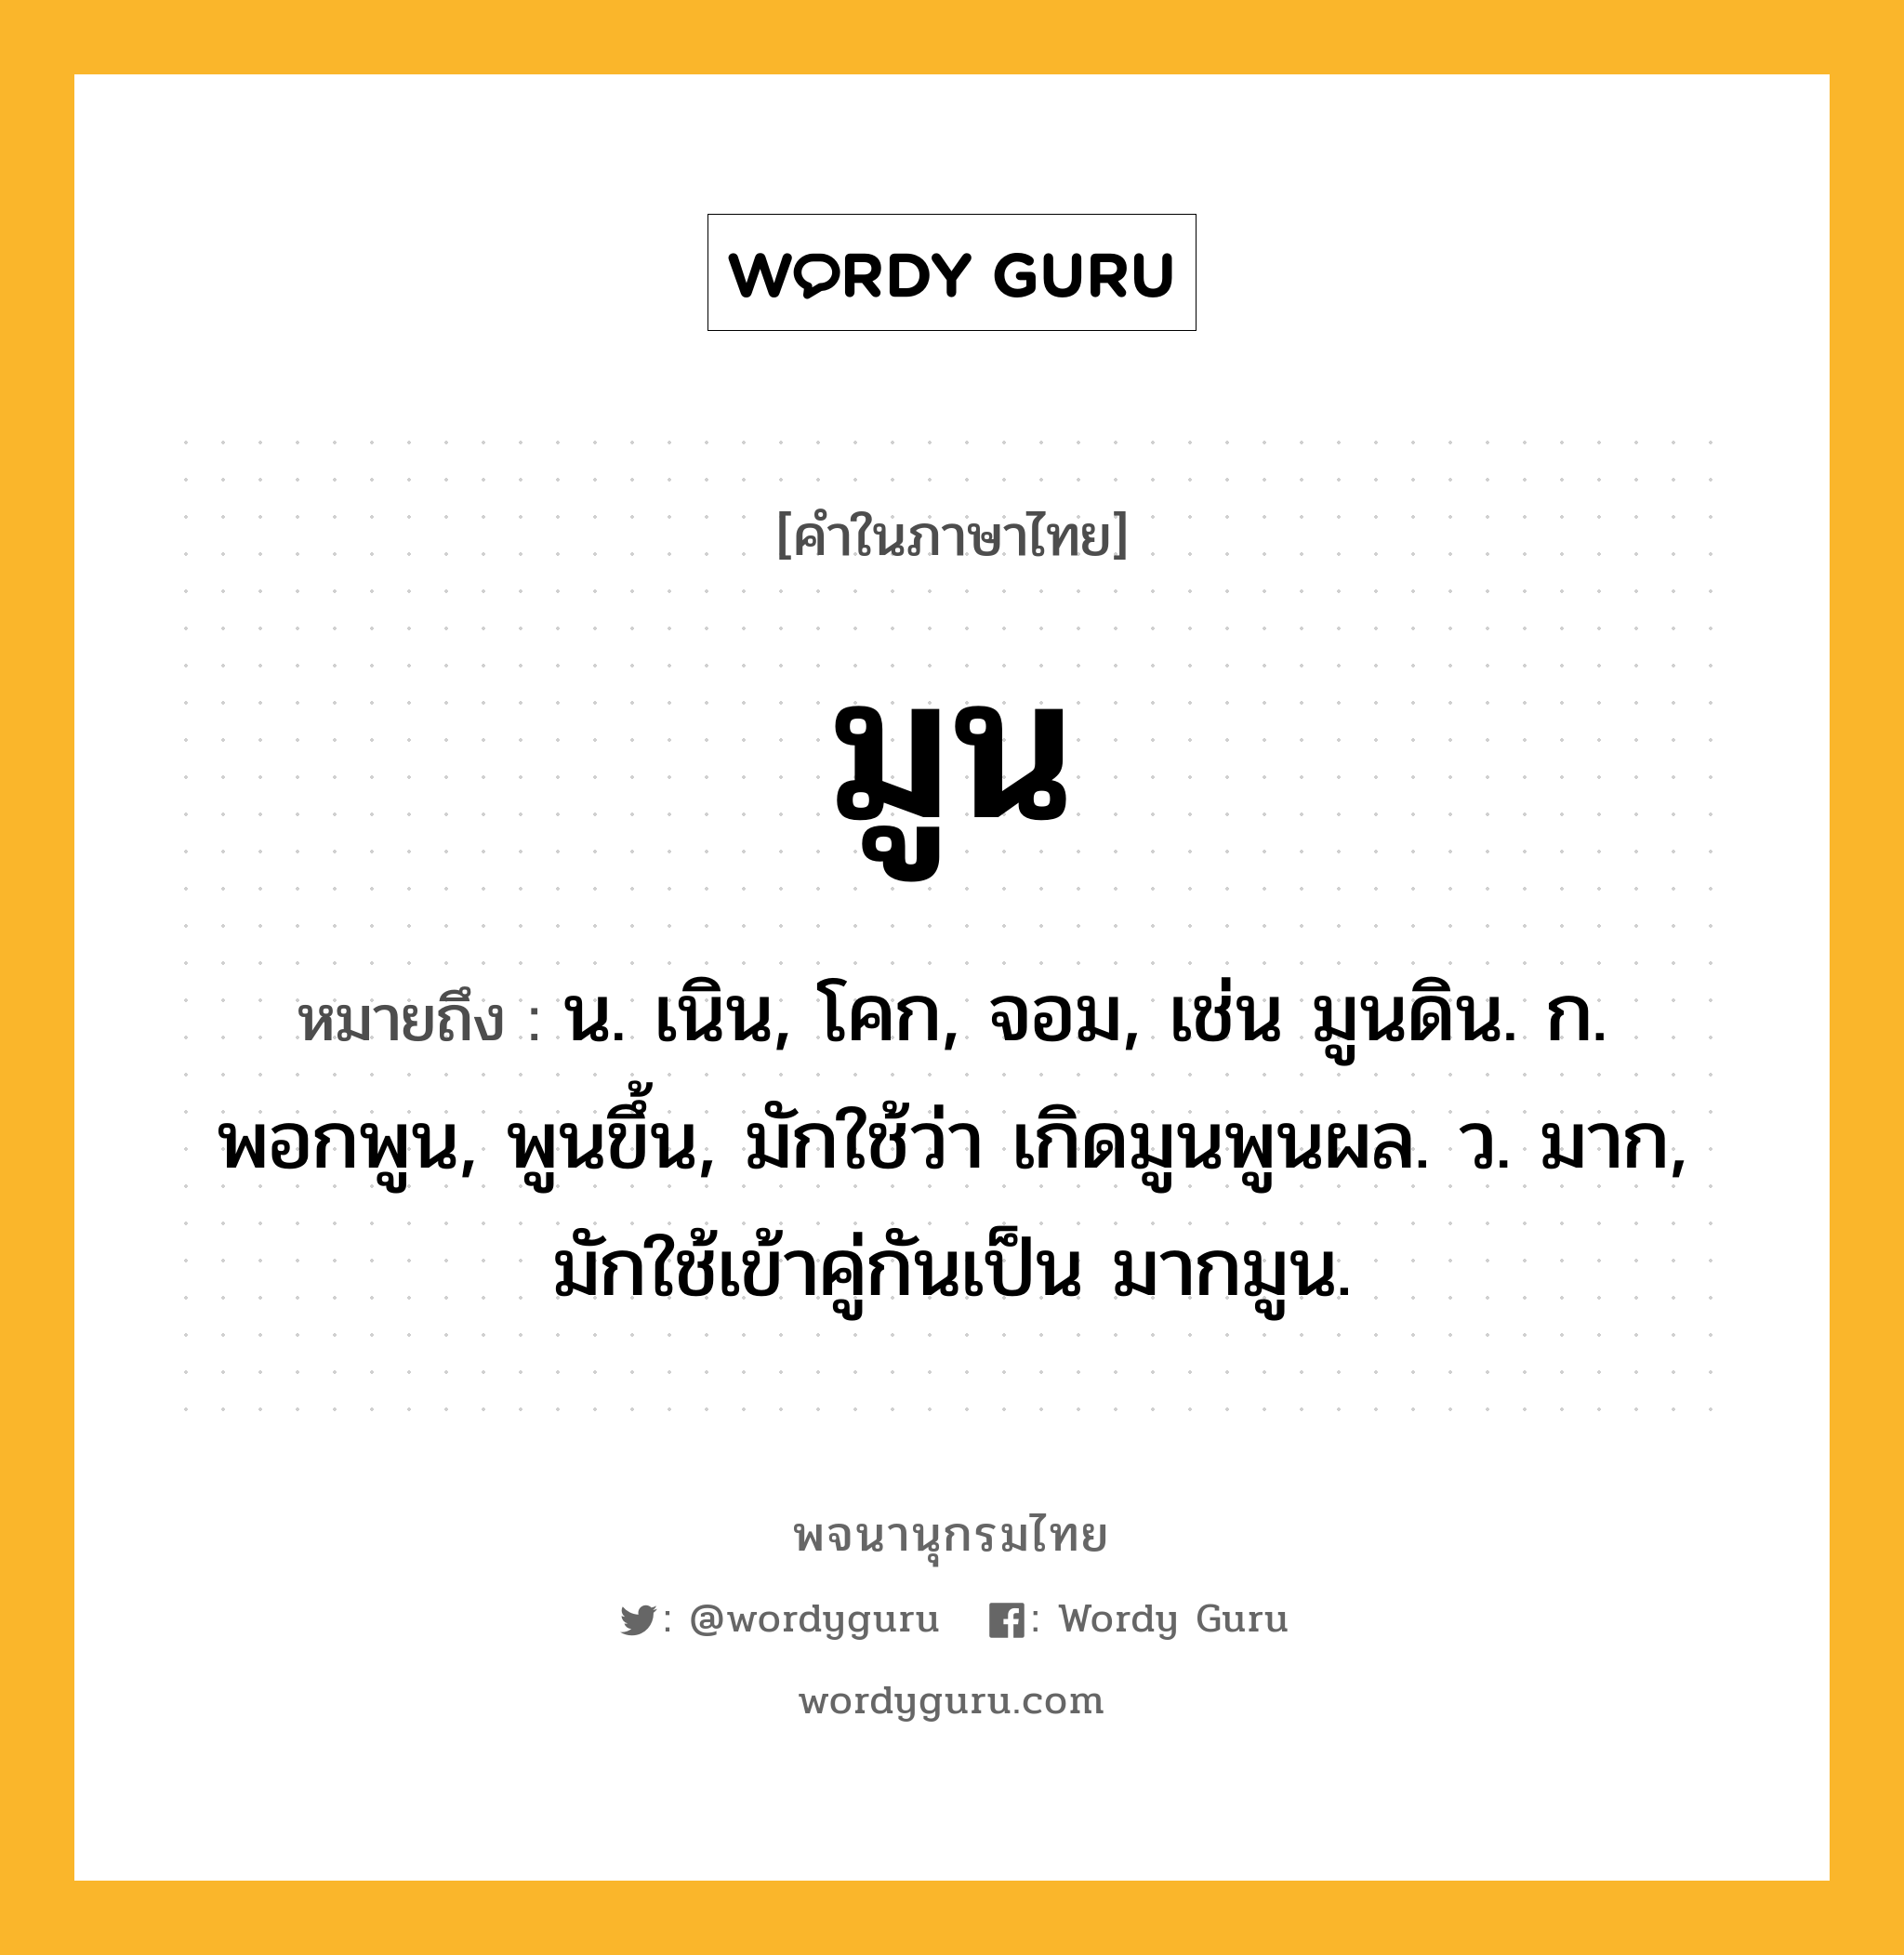 มูน หมายถึงอะไร?, คำในภาษาไทย มูน หมายถึง น. เนิน, โคก, จอม, เช่น มูนดิน. ก. พอกพูน, พูนขึ้น, มักใช้ว่า เกิดมูนพูนผล. ว. มาก, มักใช้เข้าคู่กันเป็น มากมูน.